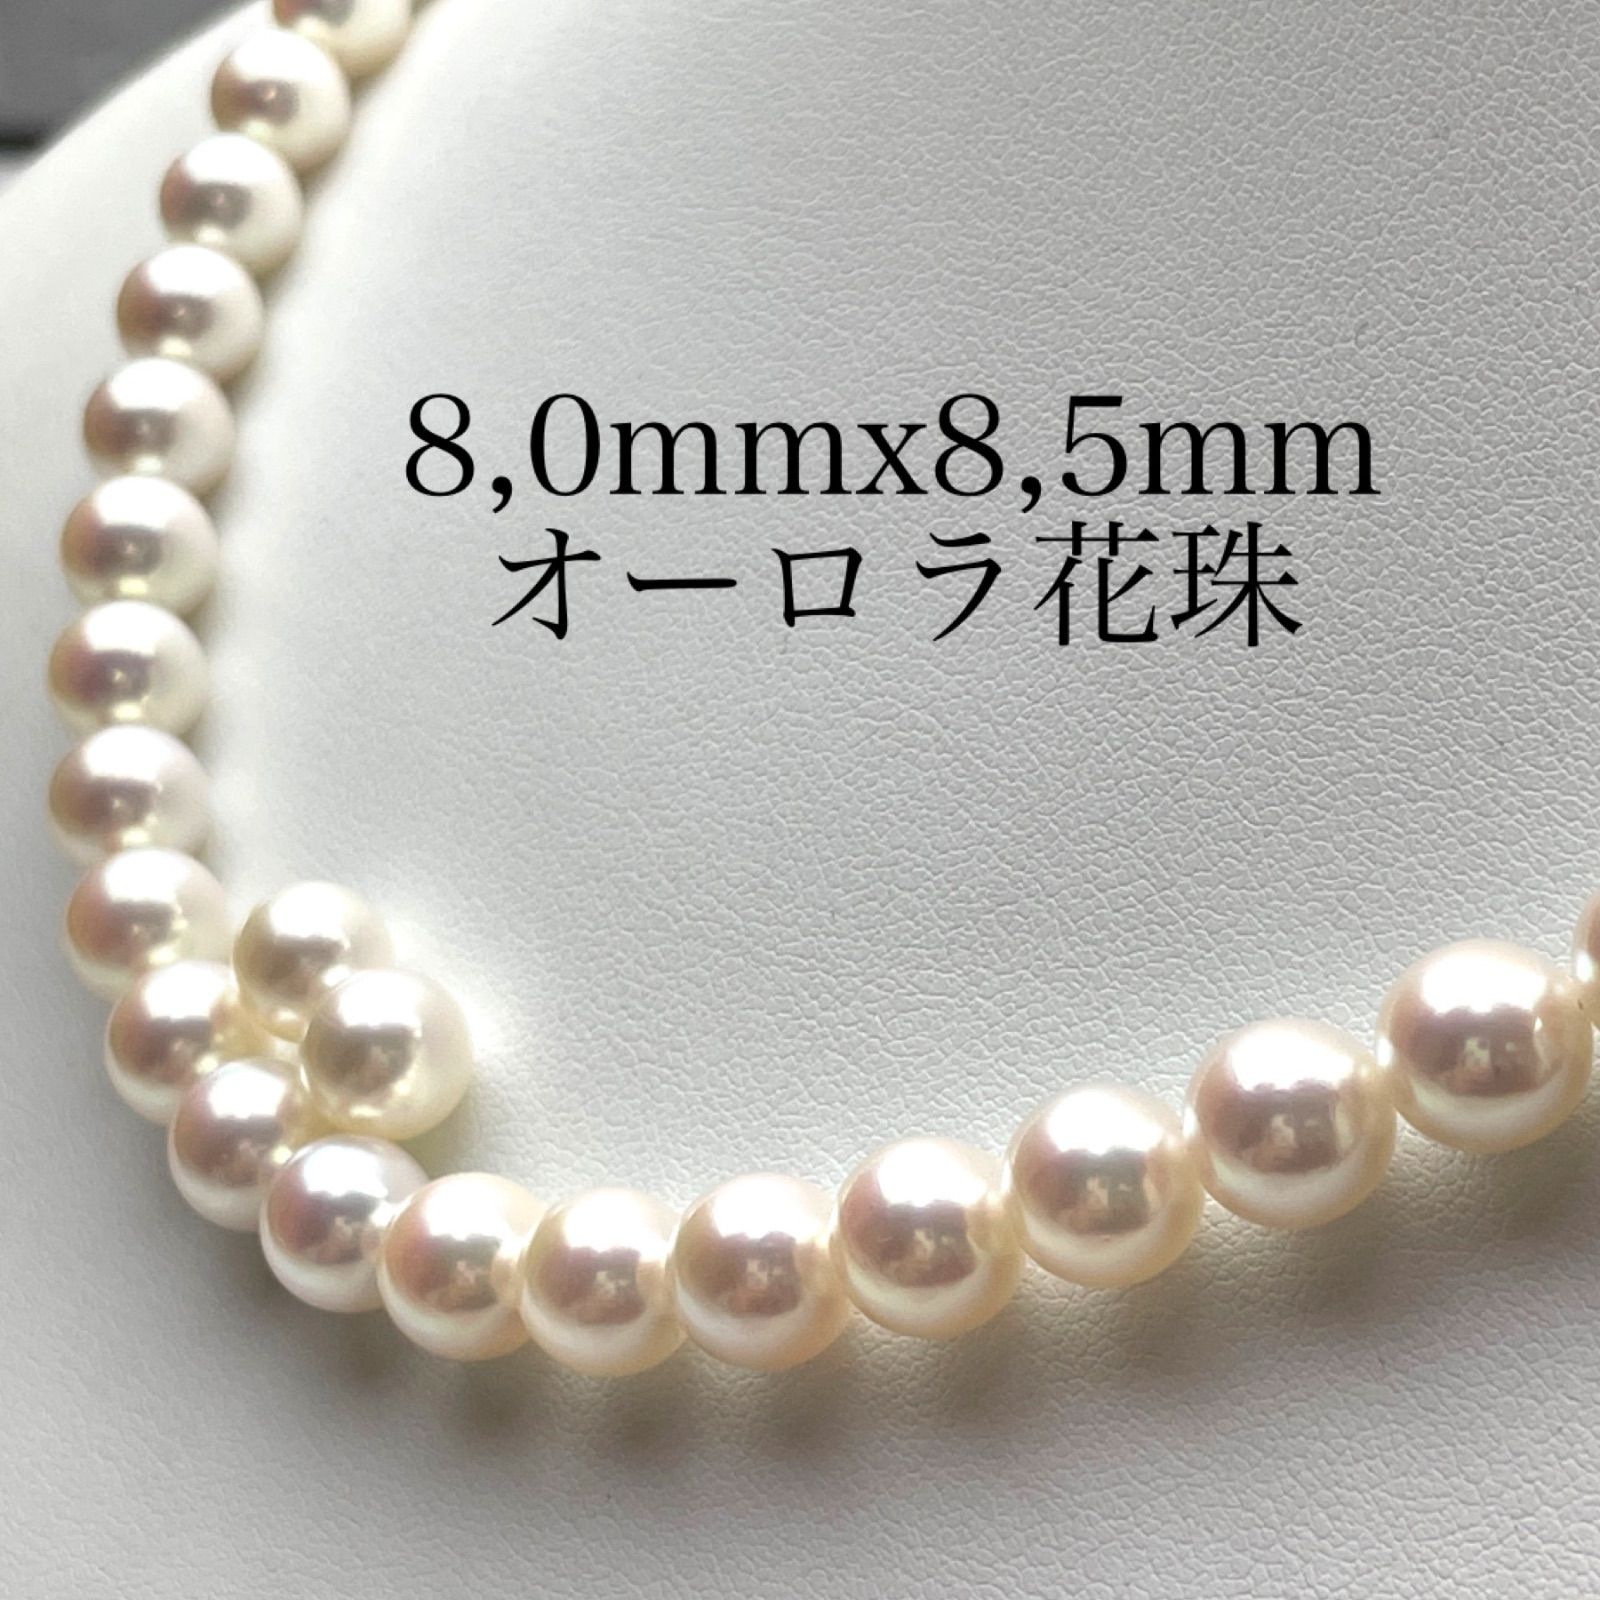 オーロラ花珠8,0mmx8,5mm SET - 真珠店 - メルカリ